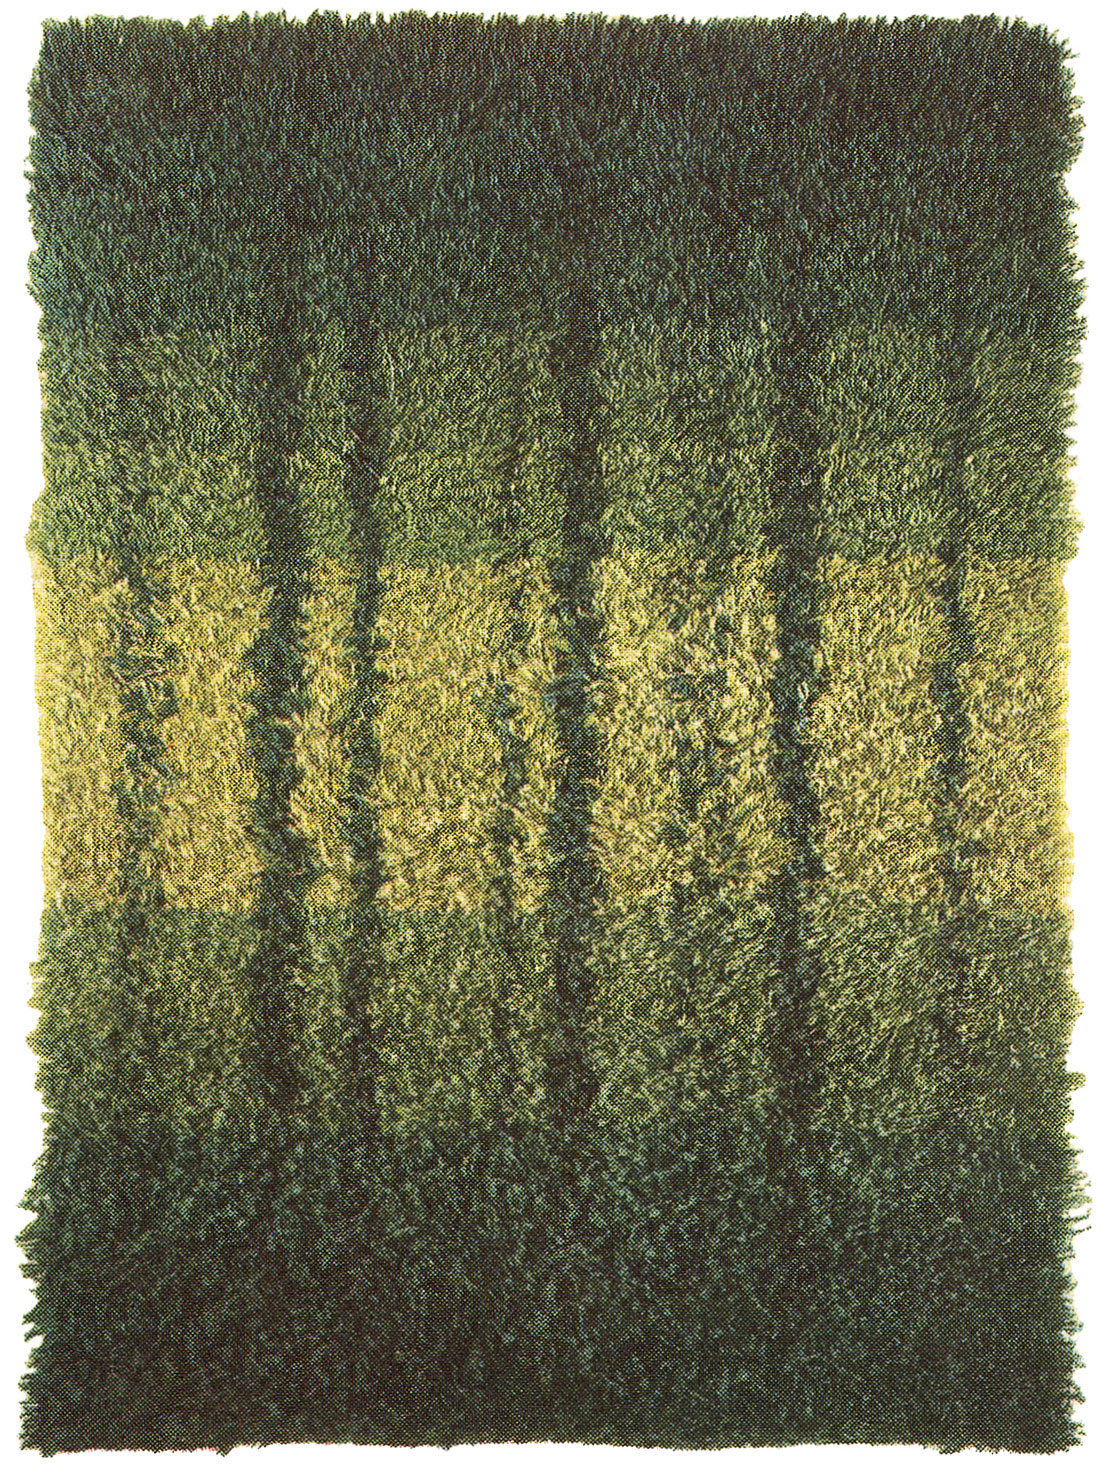 The rya rug SKOGSBRYNET in different green shades.